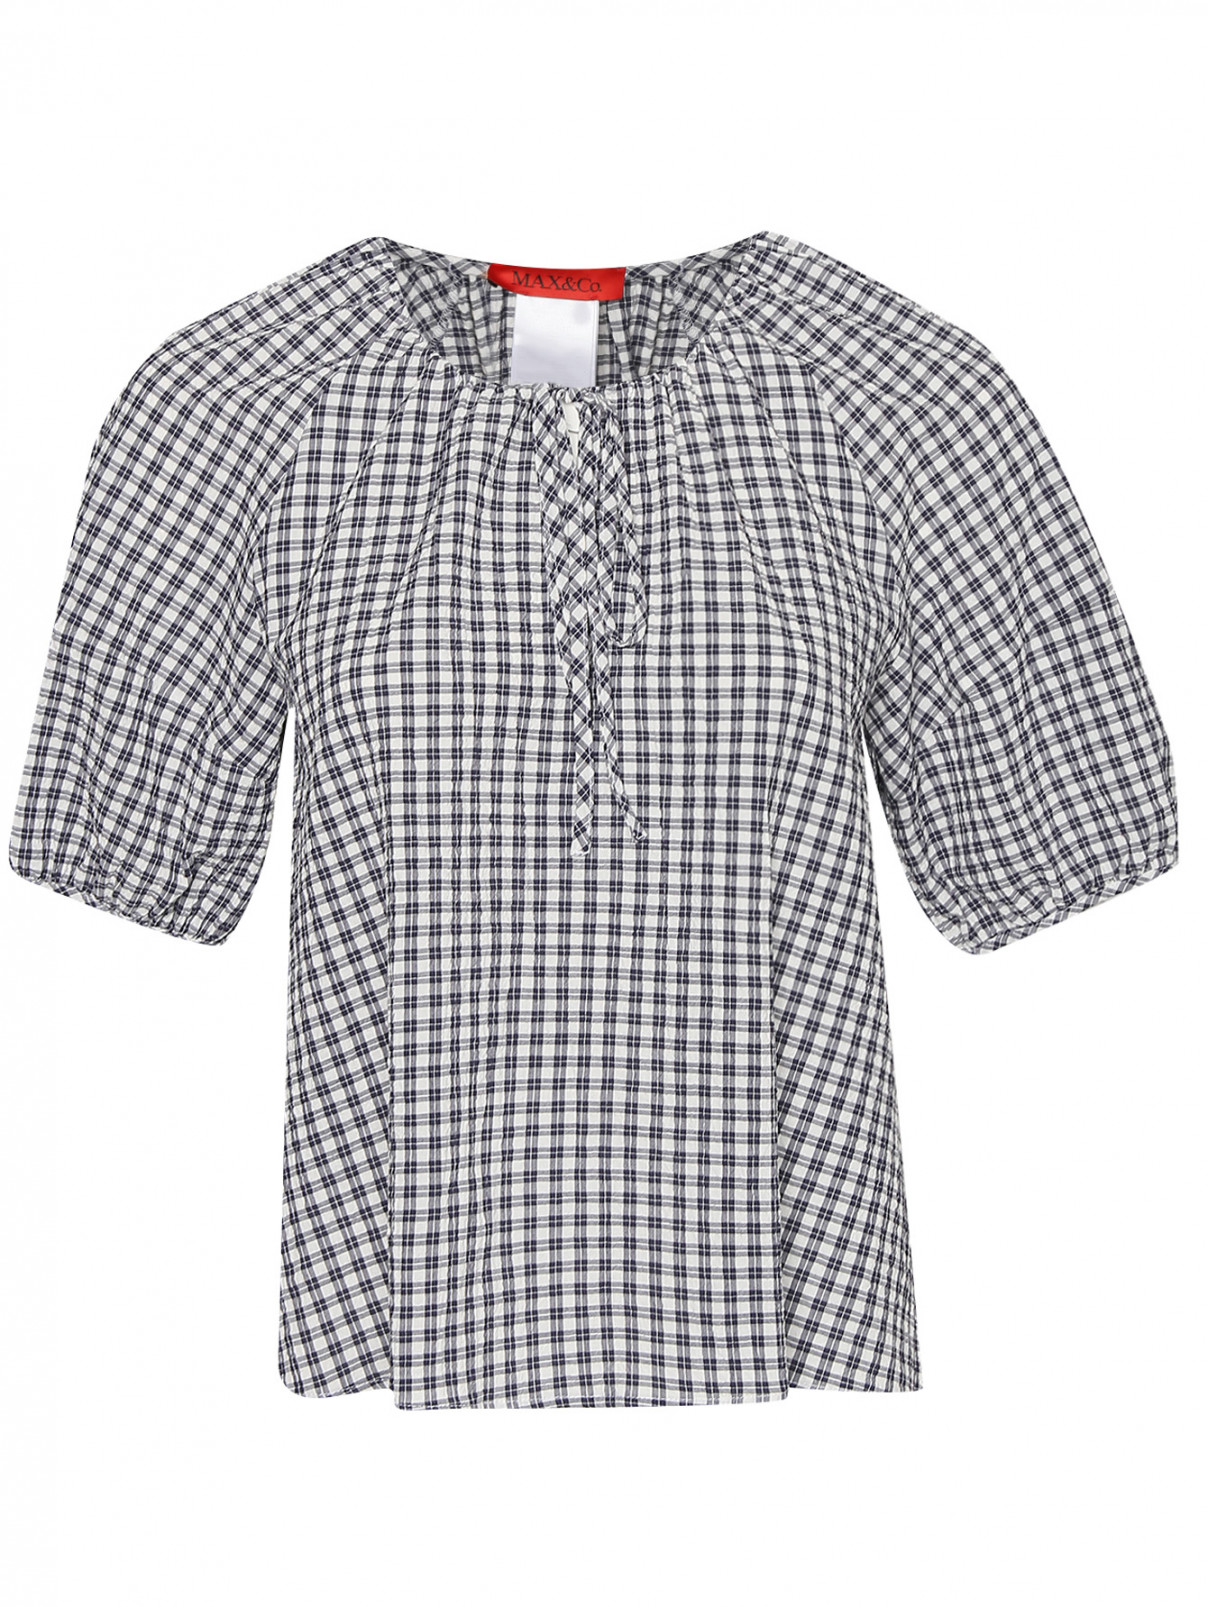 Блуза из хлопка с узором клетка Max&Co  –  Общий вид  – Цвет:  Узор